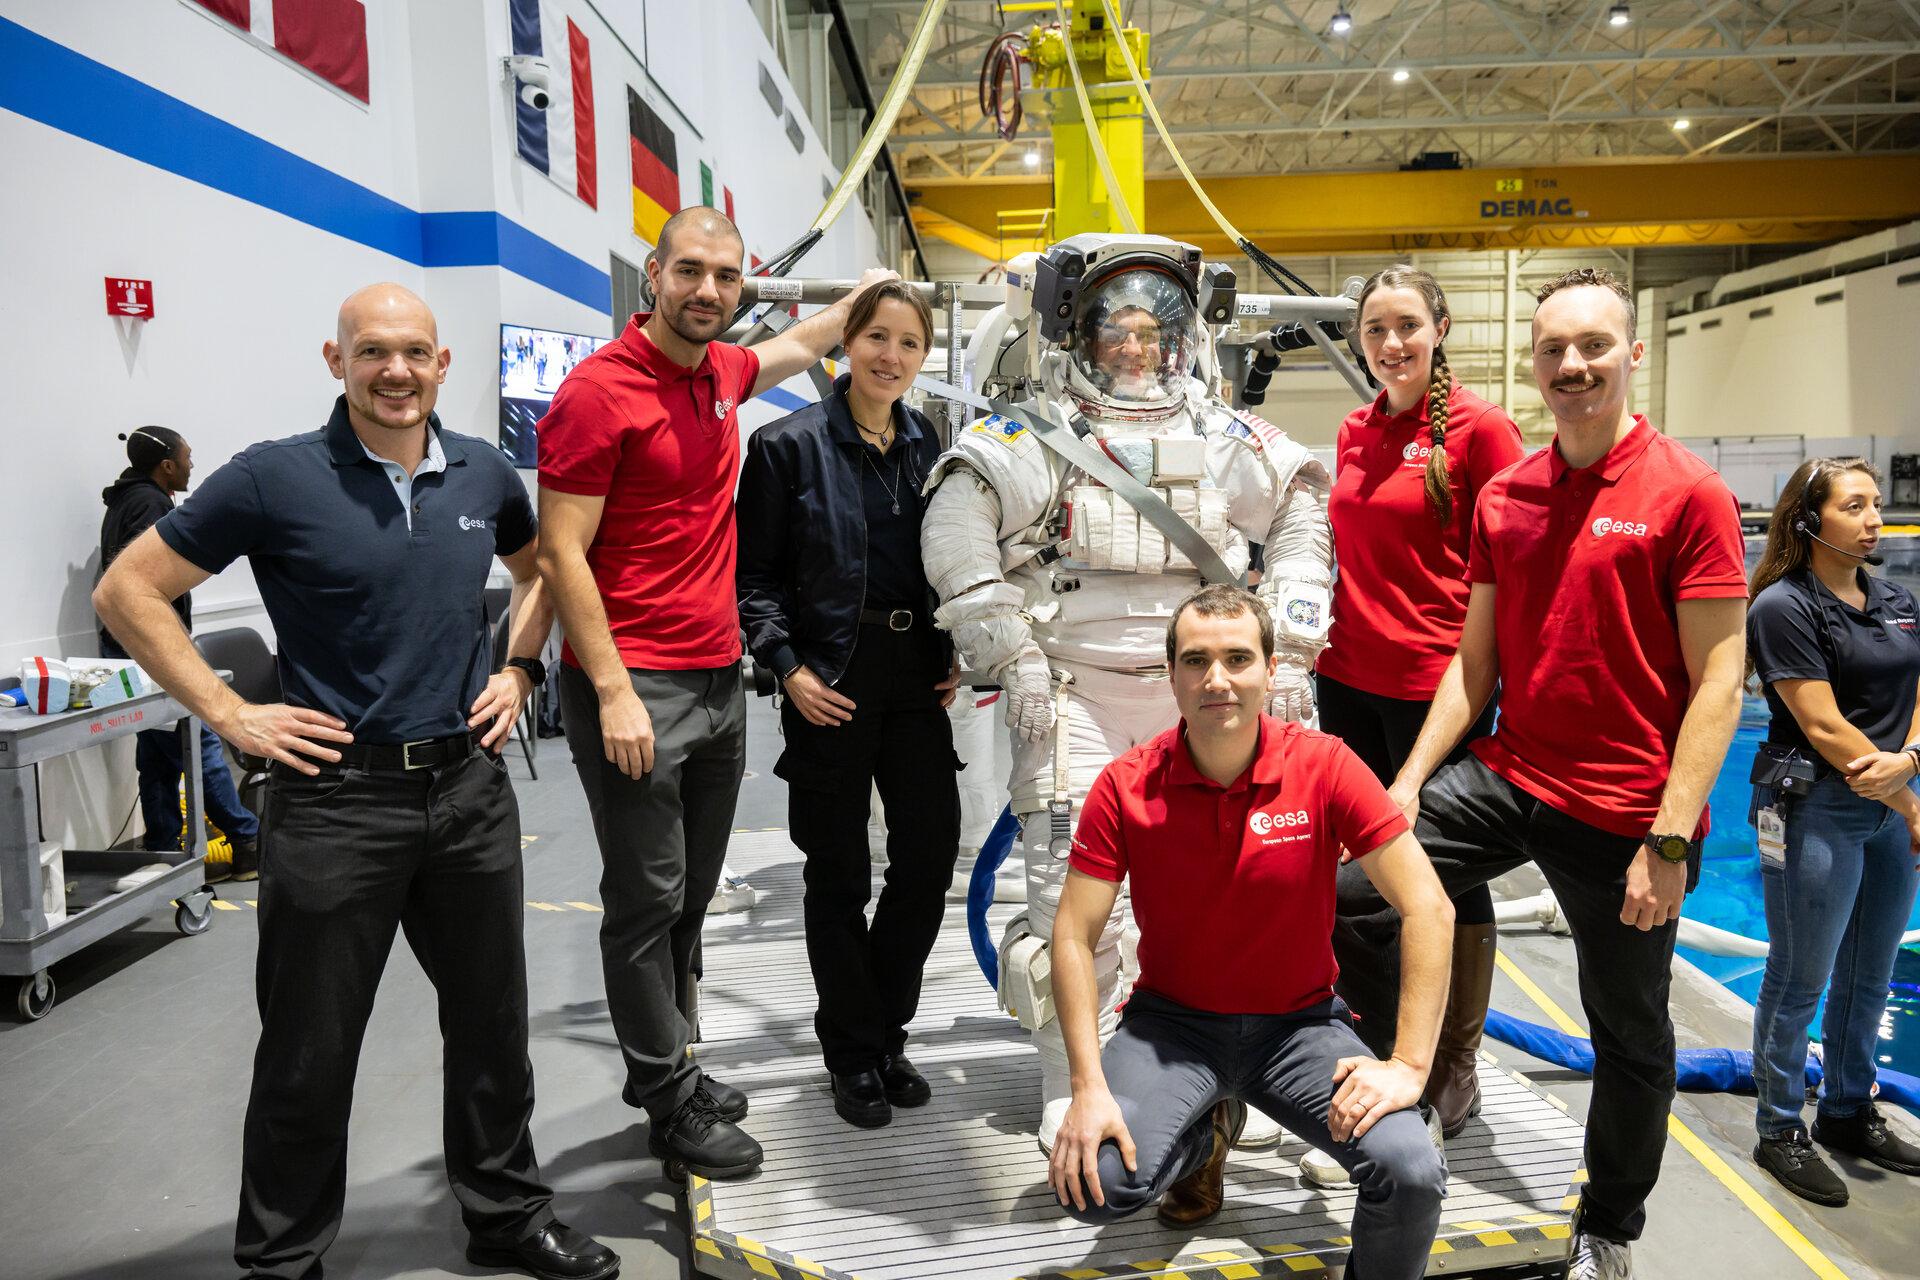 Les membres de la classe d'astronautes 2022 de l'ESA en visite au Centre spatial Johnson de la NASA à Houston, au Texas, où ils et elles passeront une grande partie de leur formation. Ici, la visite du laboratoire de flottabilité neutre qui abrite une réplique de l'ensemble de l'ISS, où les astronautes peuvent effectuer sous l'eau des simulations de sorties dans l'espace en utilisant la combinaison spatiale américaine, connue sous le nom d'unité de mobilité extravéhiculaire (EMU). [NASA-JSC - Robert Markowitz]